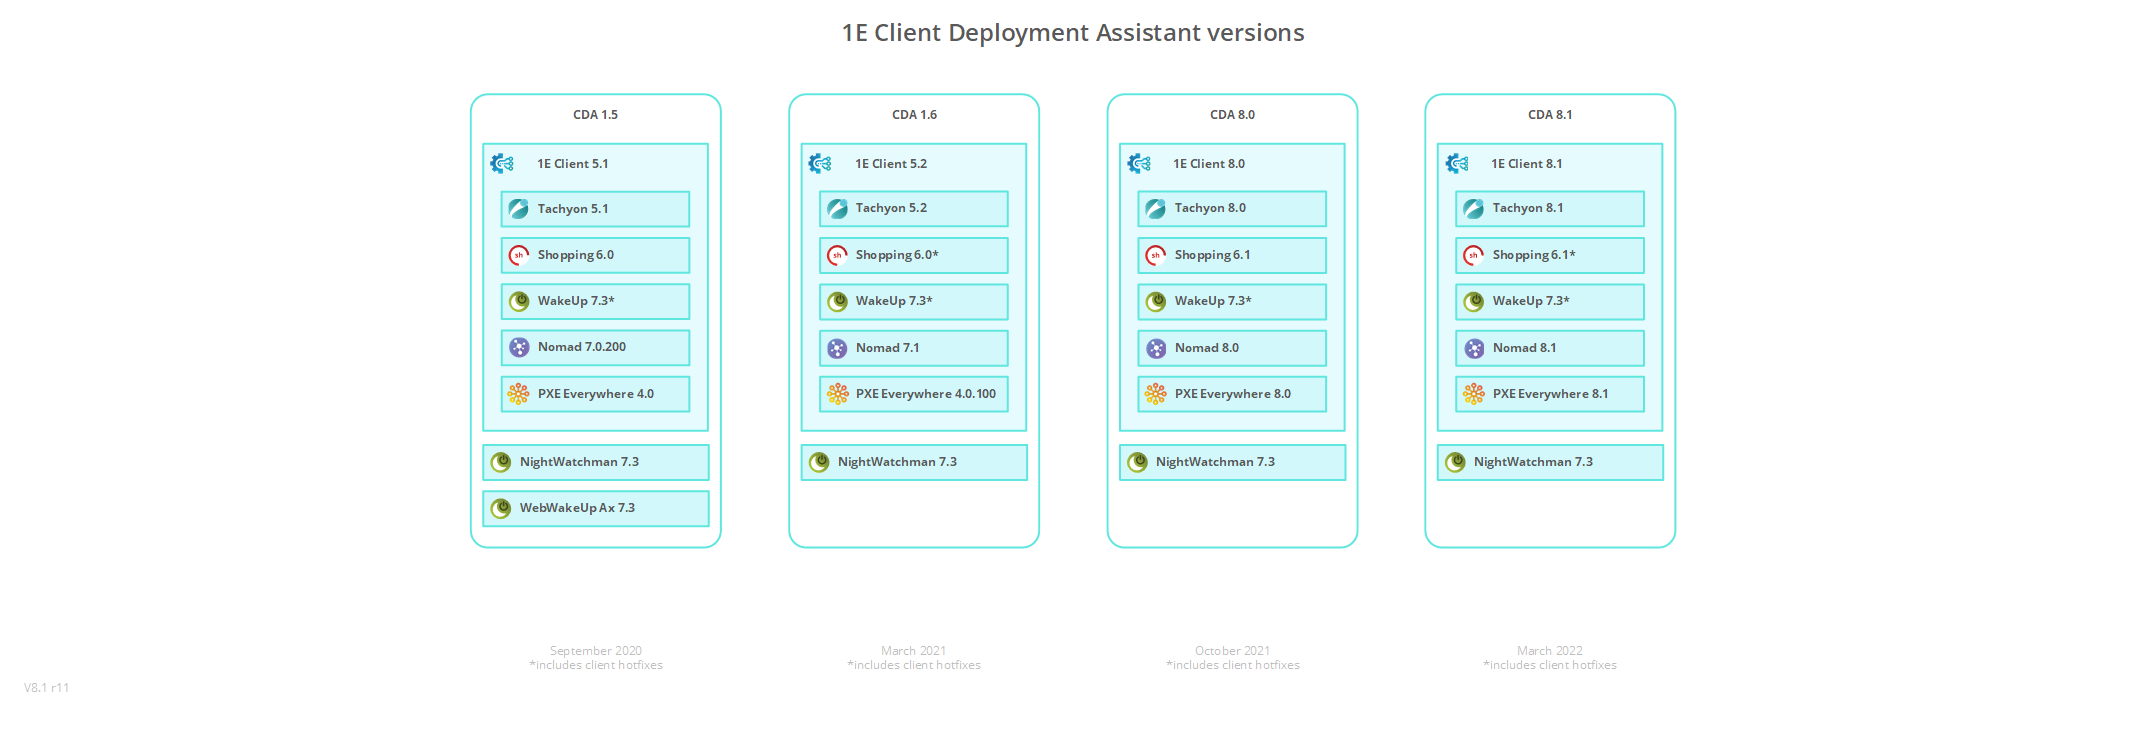 1E_Client_Deployment_Assistant_versions.png